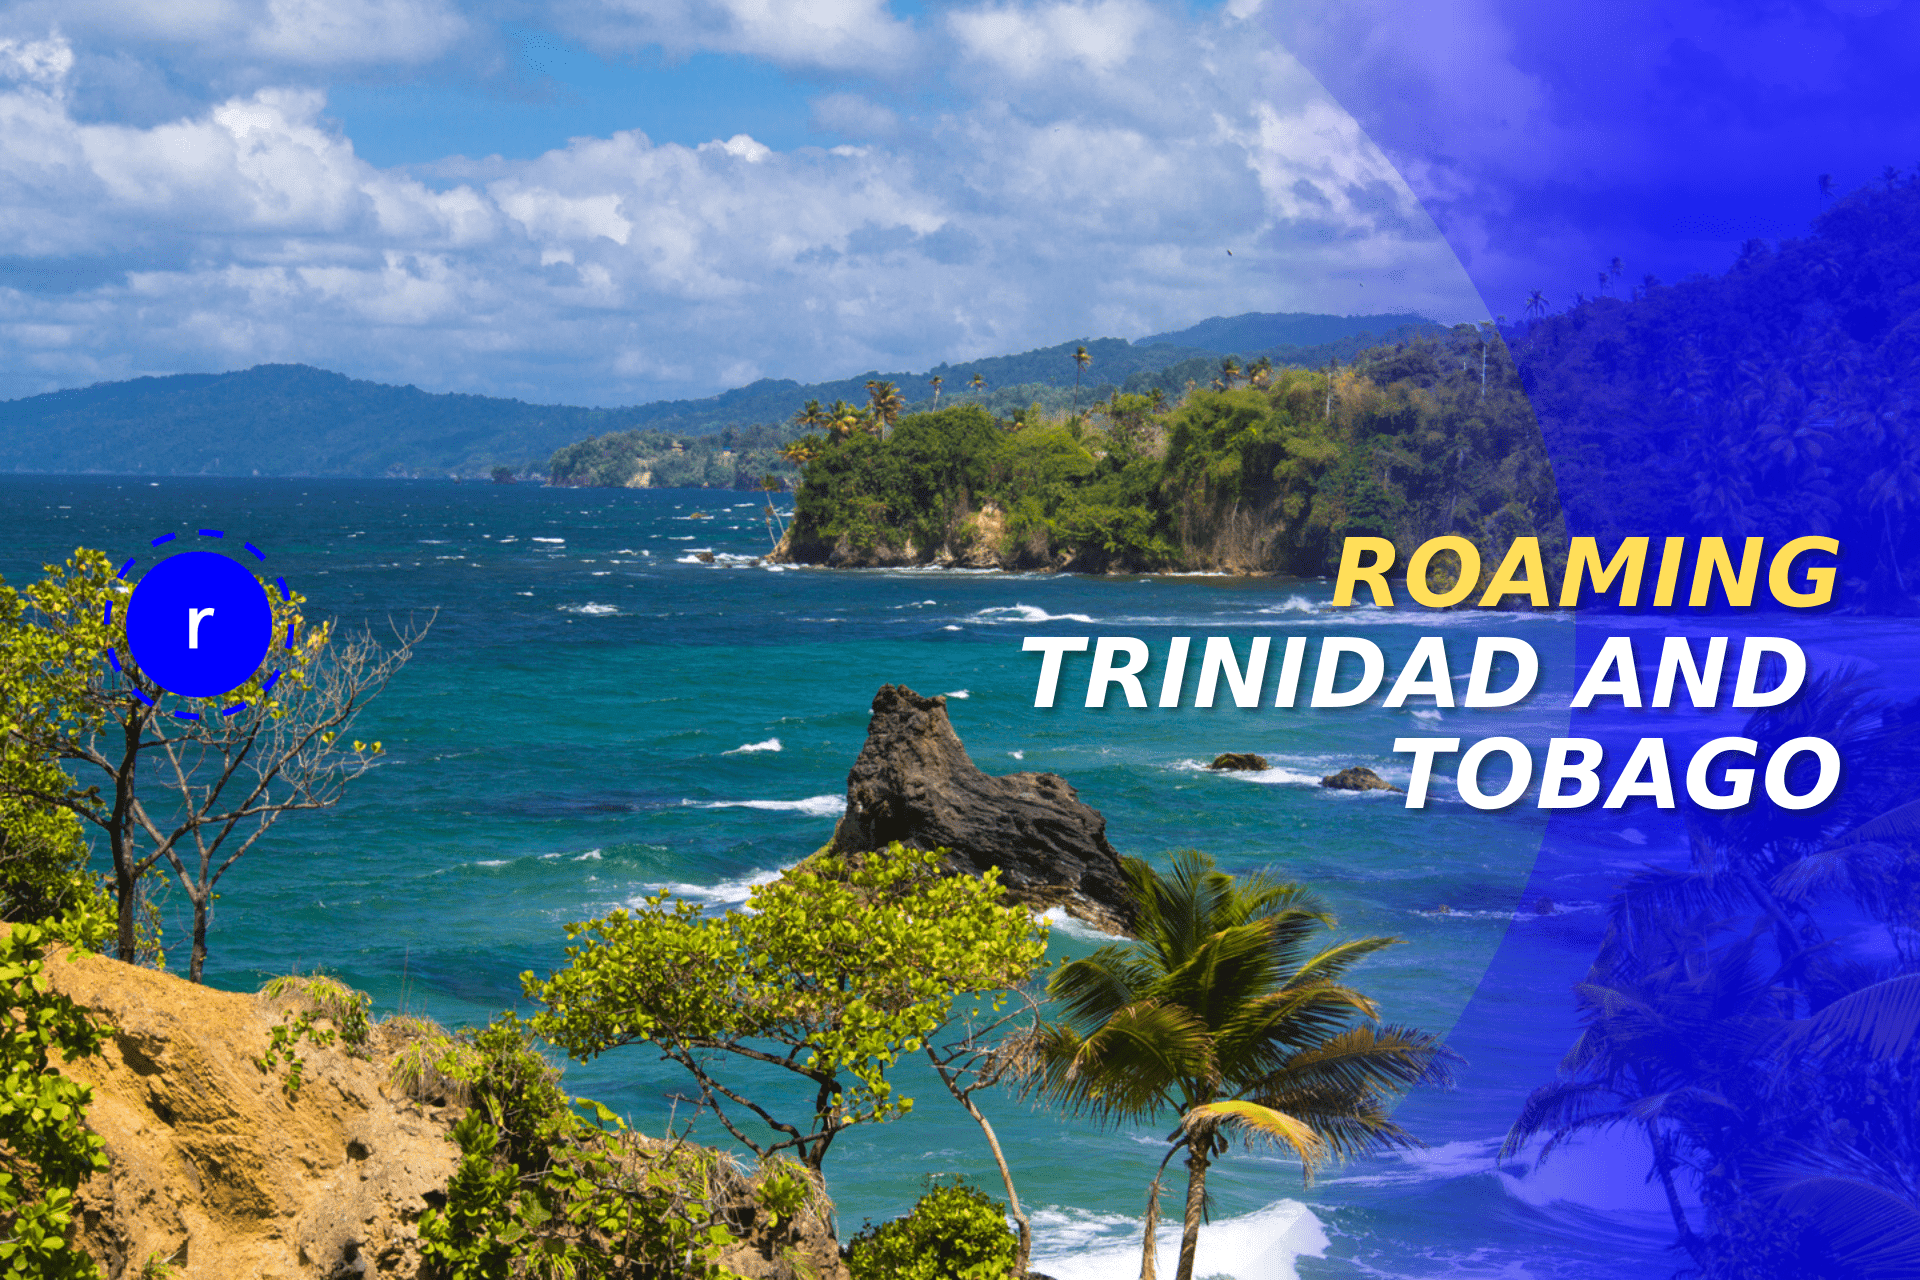 Roaming Trinidad and Tobago